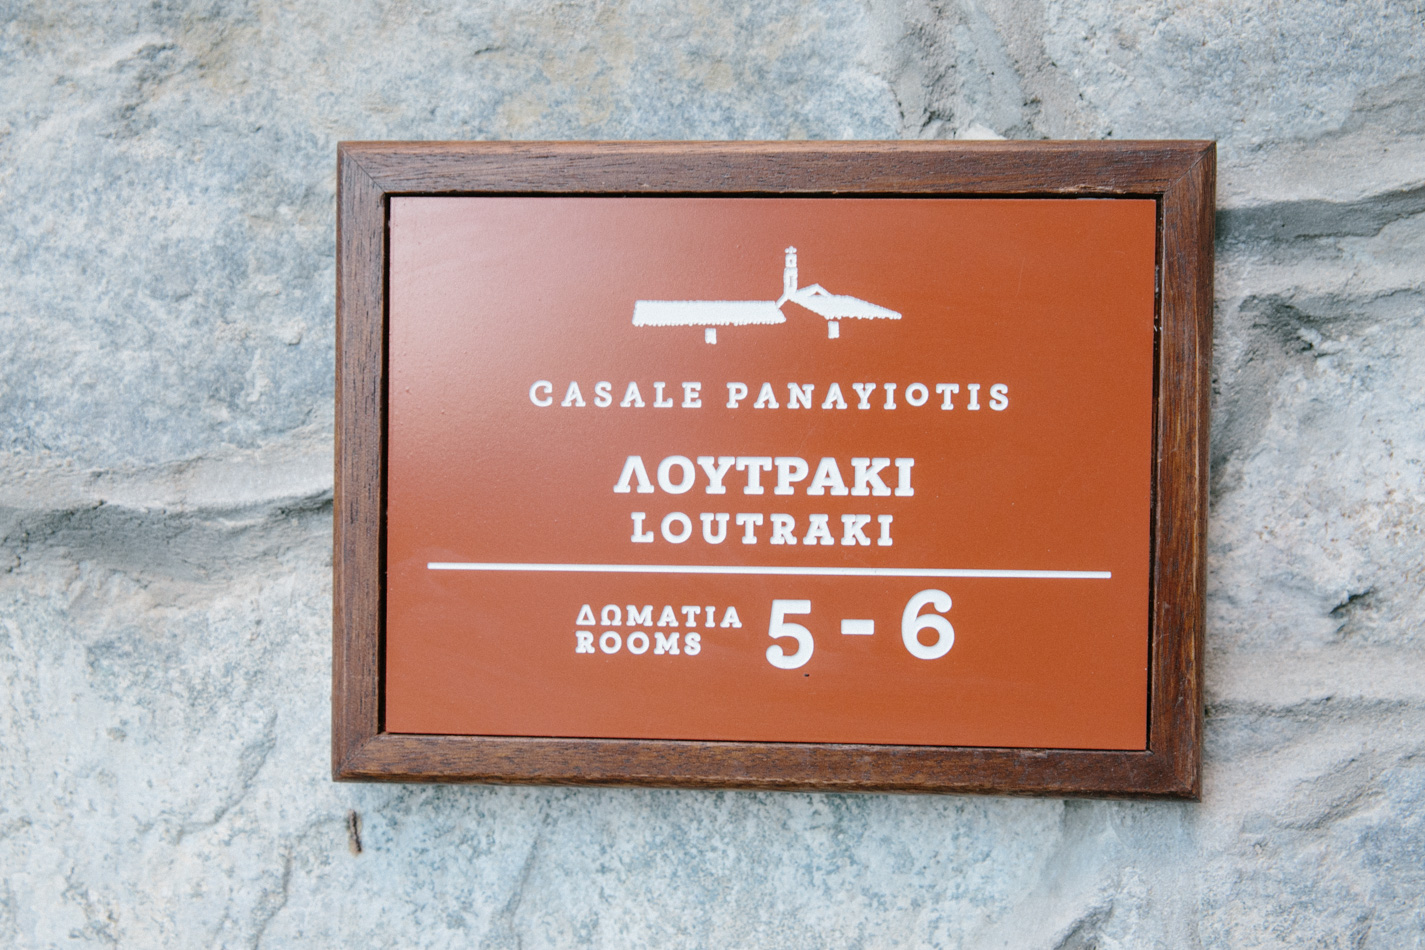 Casale Panayiotis Cyprus